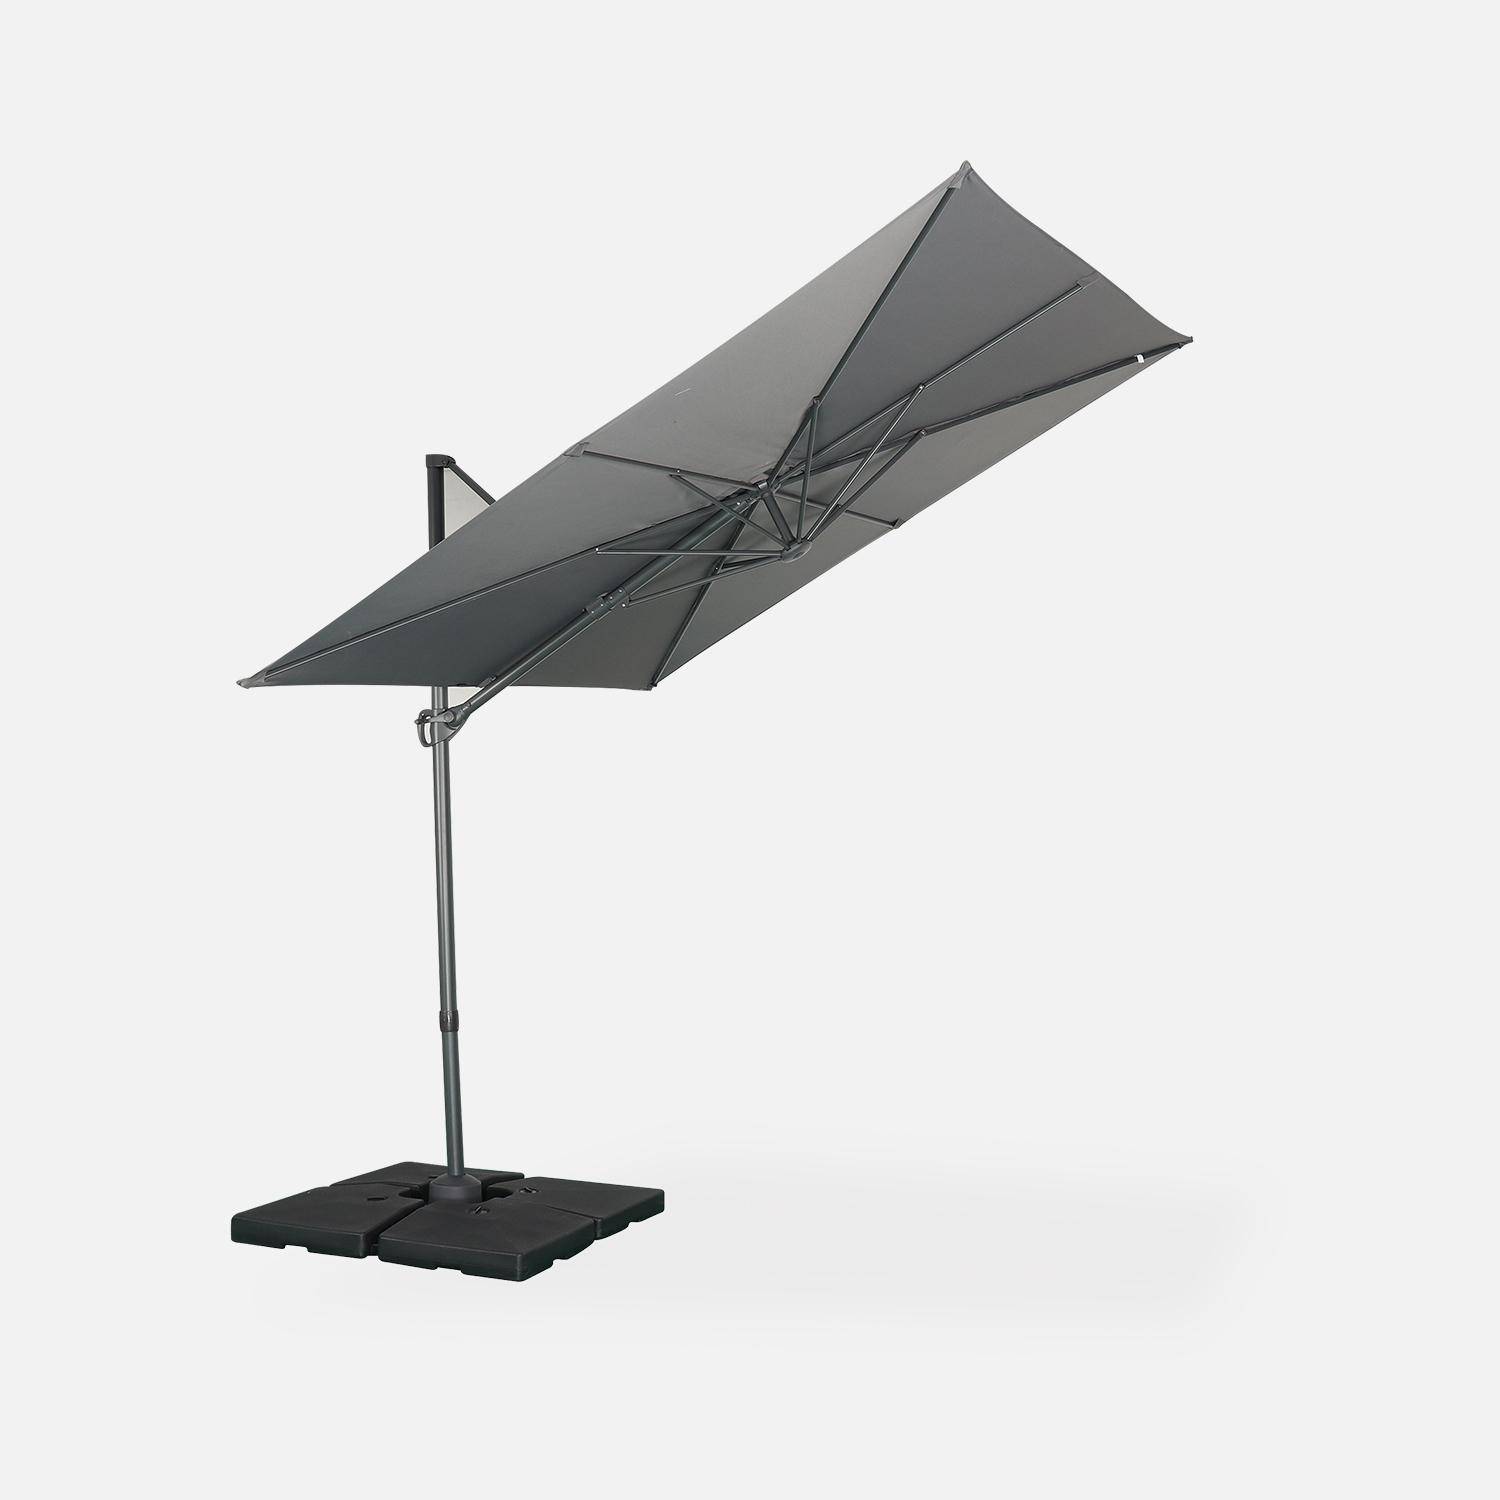 Parasol déporté carré 2,5x2,5m – Andernos – gris – parasol exporté, inclinable, rabattable et rotatif à 360° Photo3